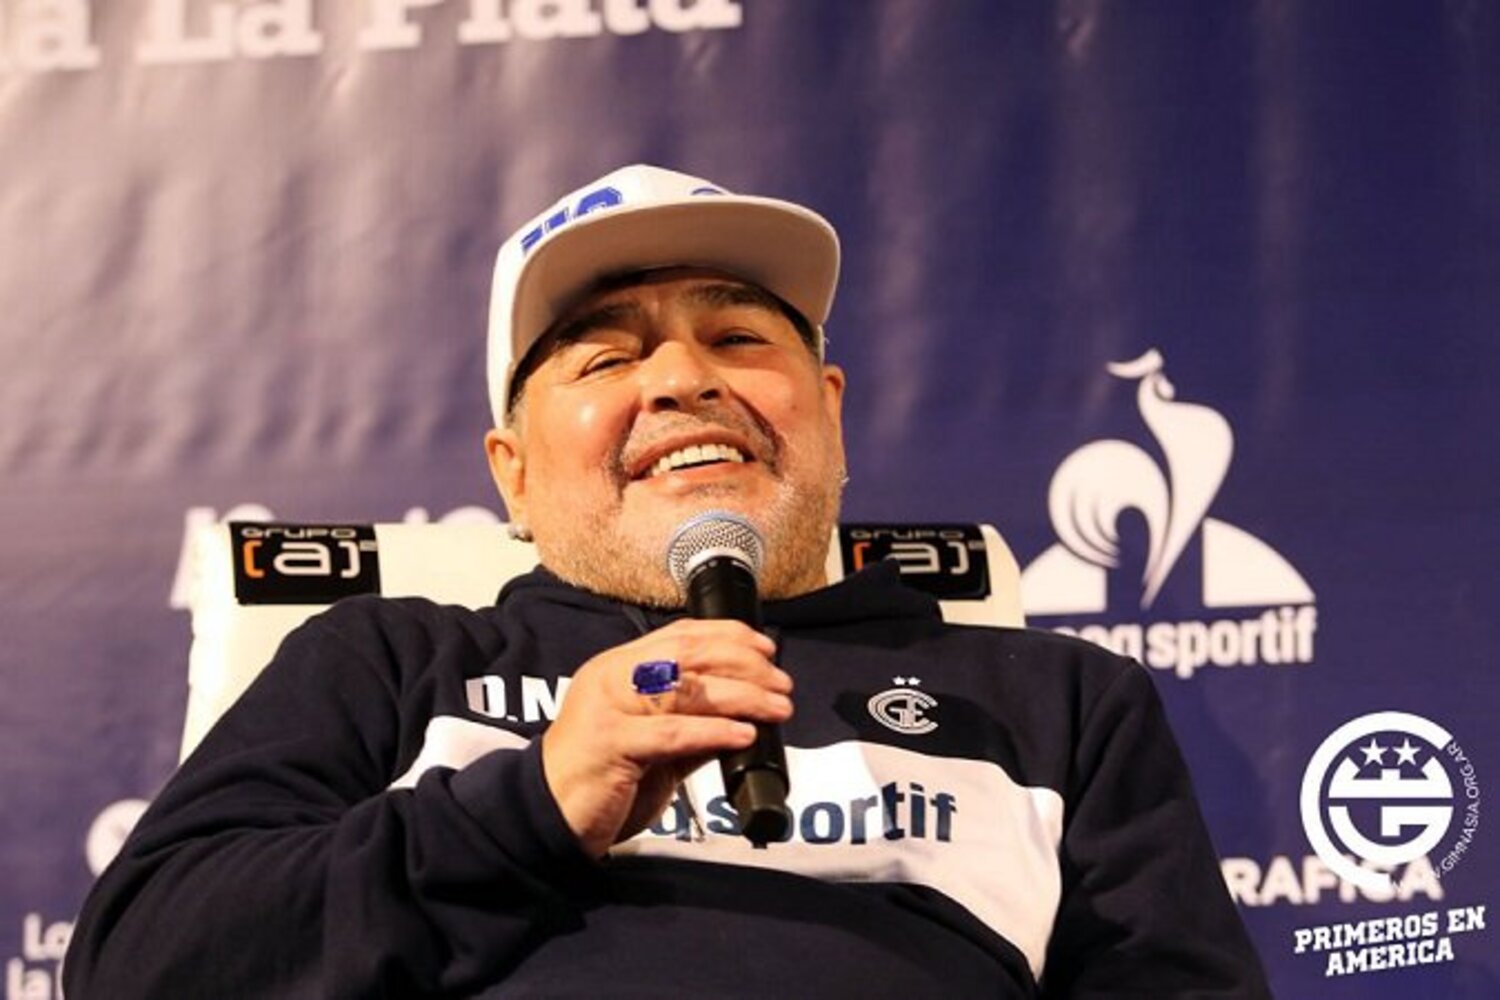 Maradona robi porządki w nowym klubie. Chce usunięcia koszulek z numerami 13 i 17